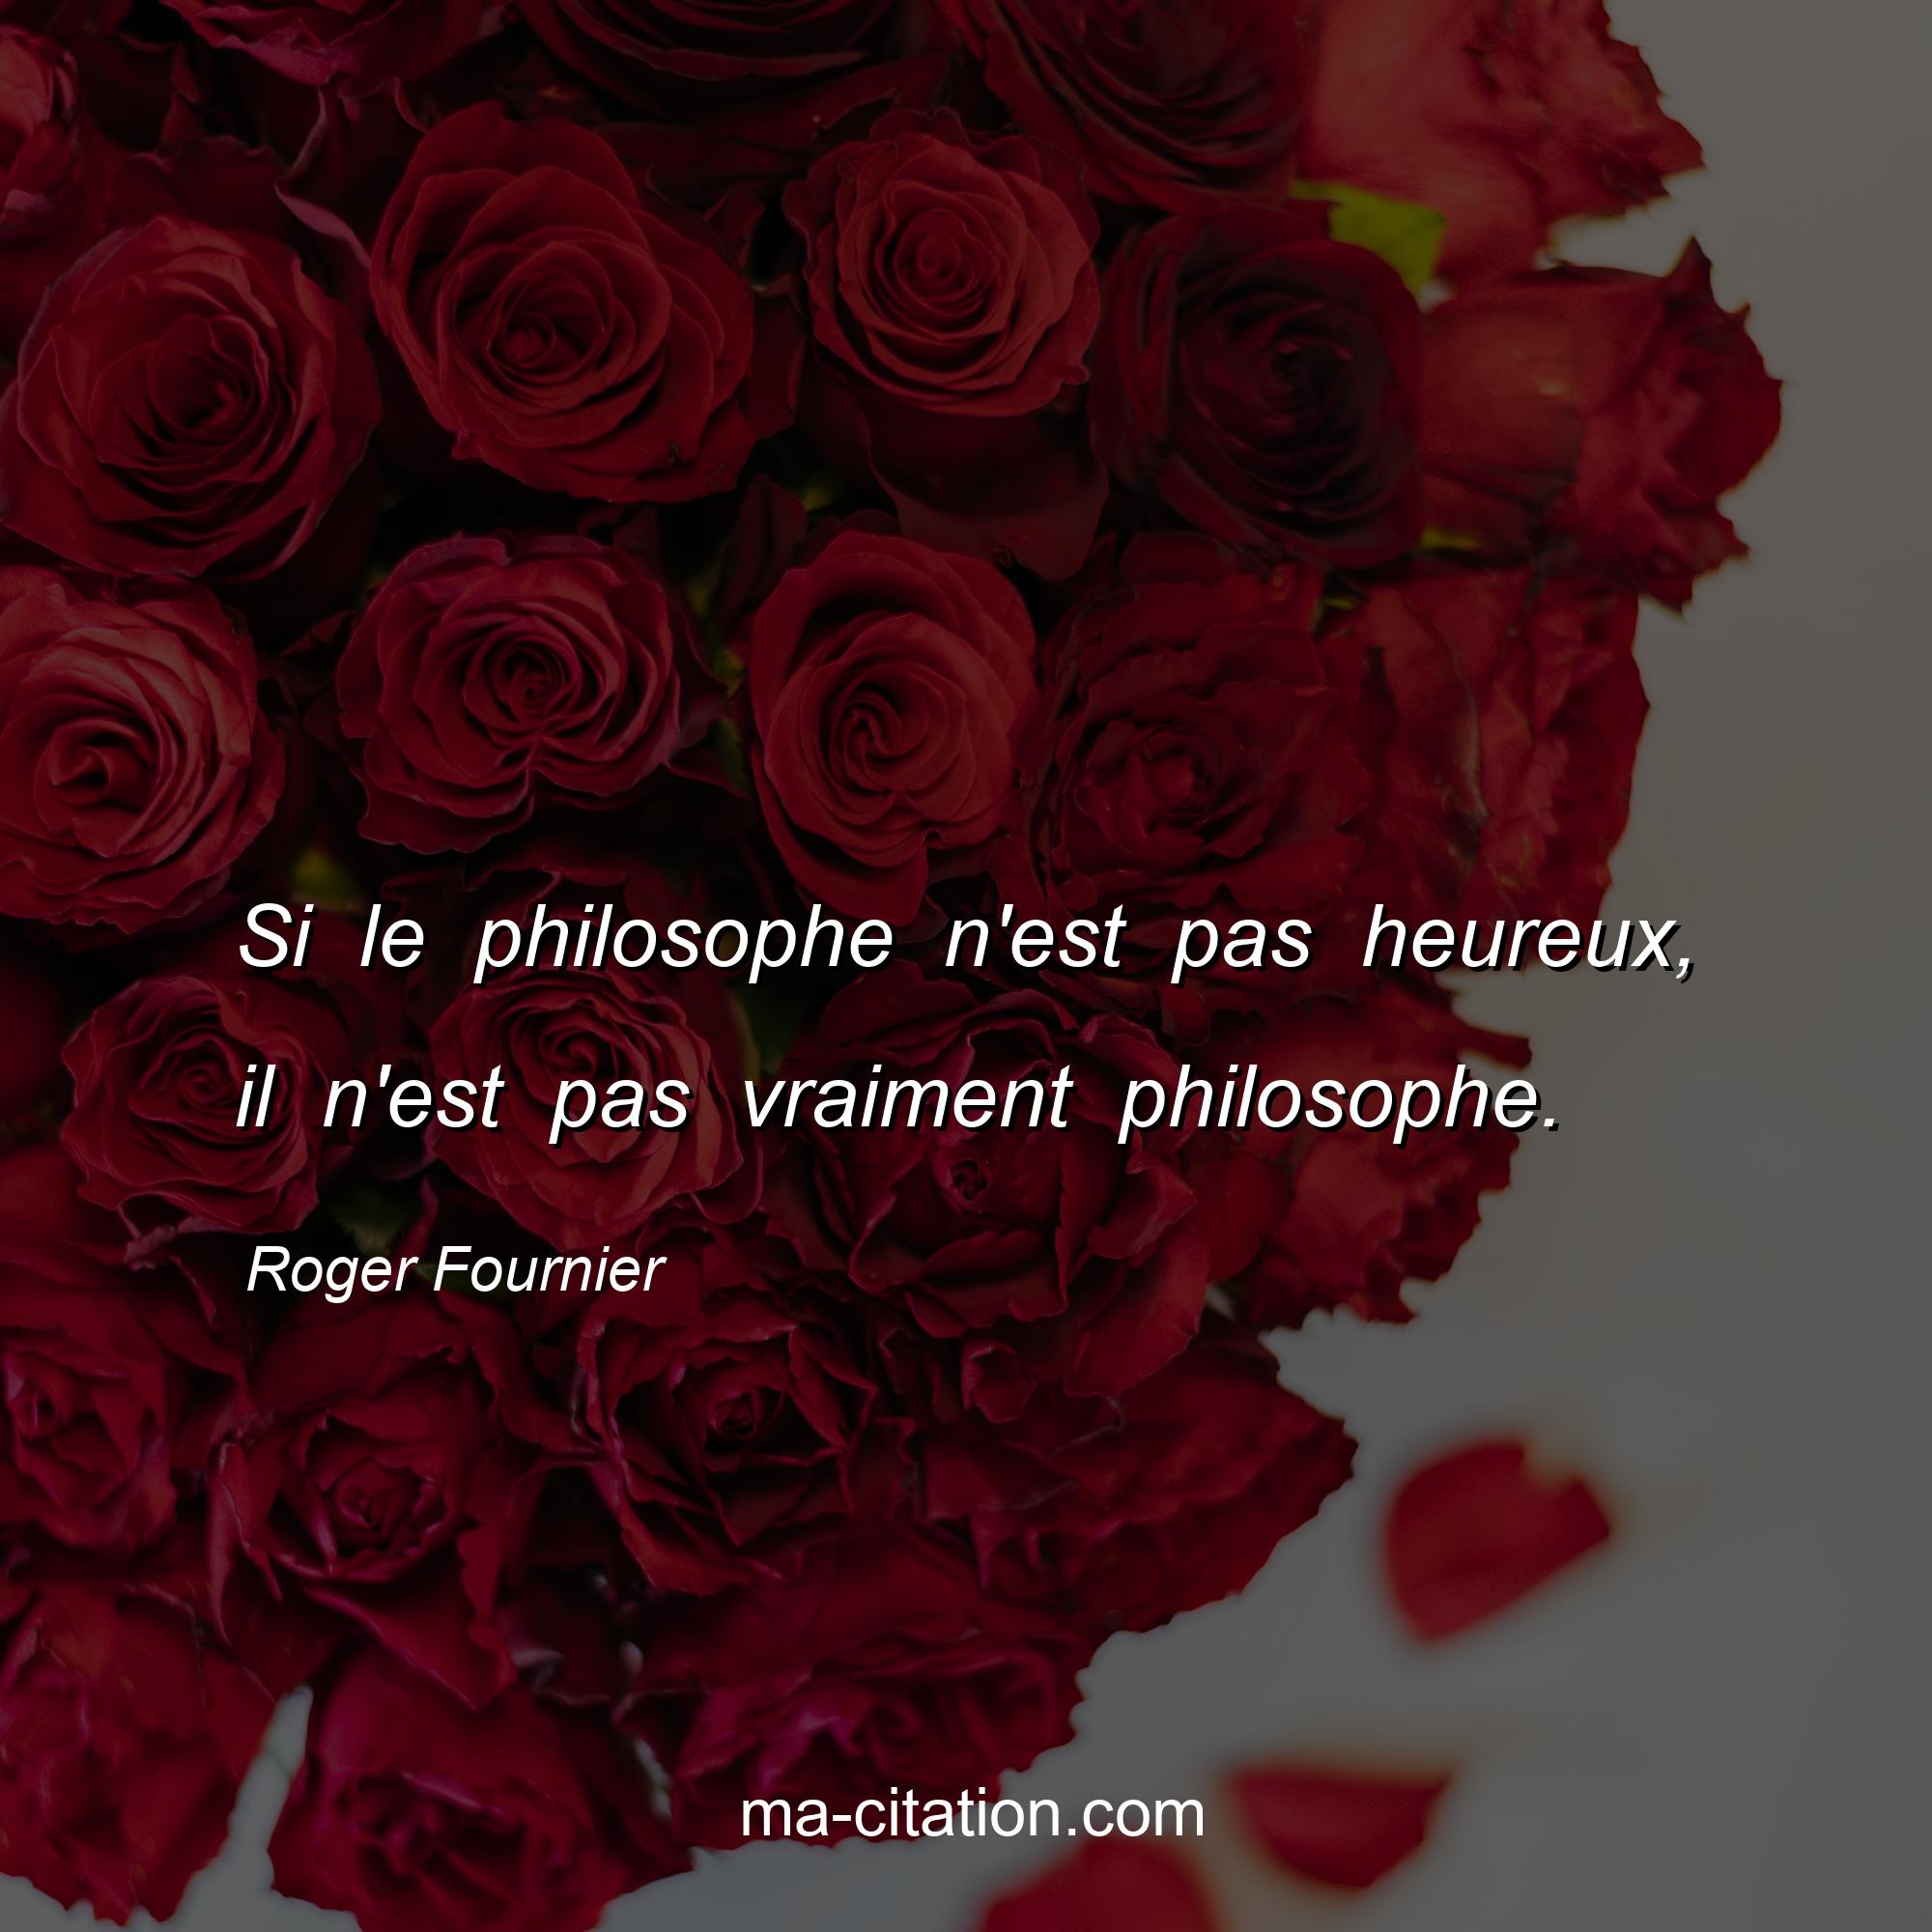 Roger Fournier : Si le philosophe n'est pas heureux, il n'est pas vraiment philosophe.